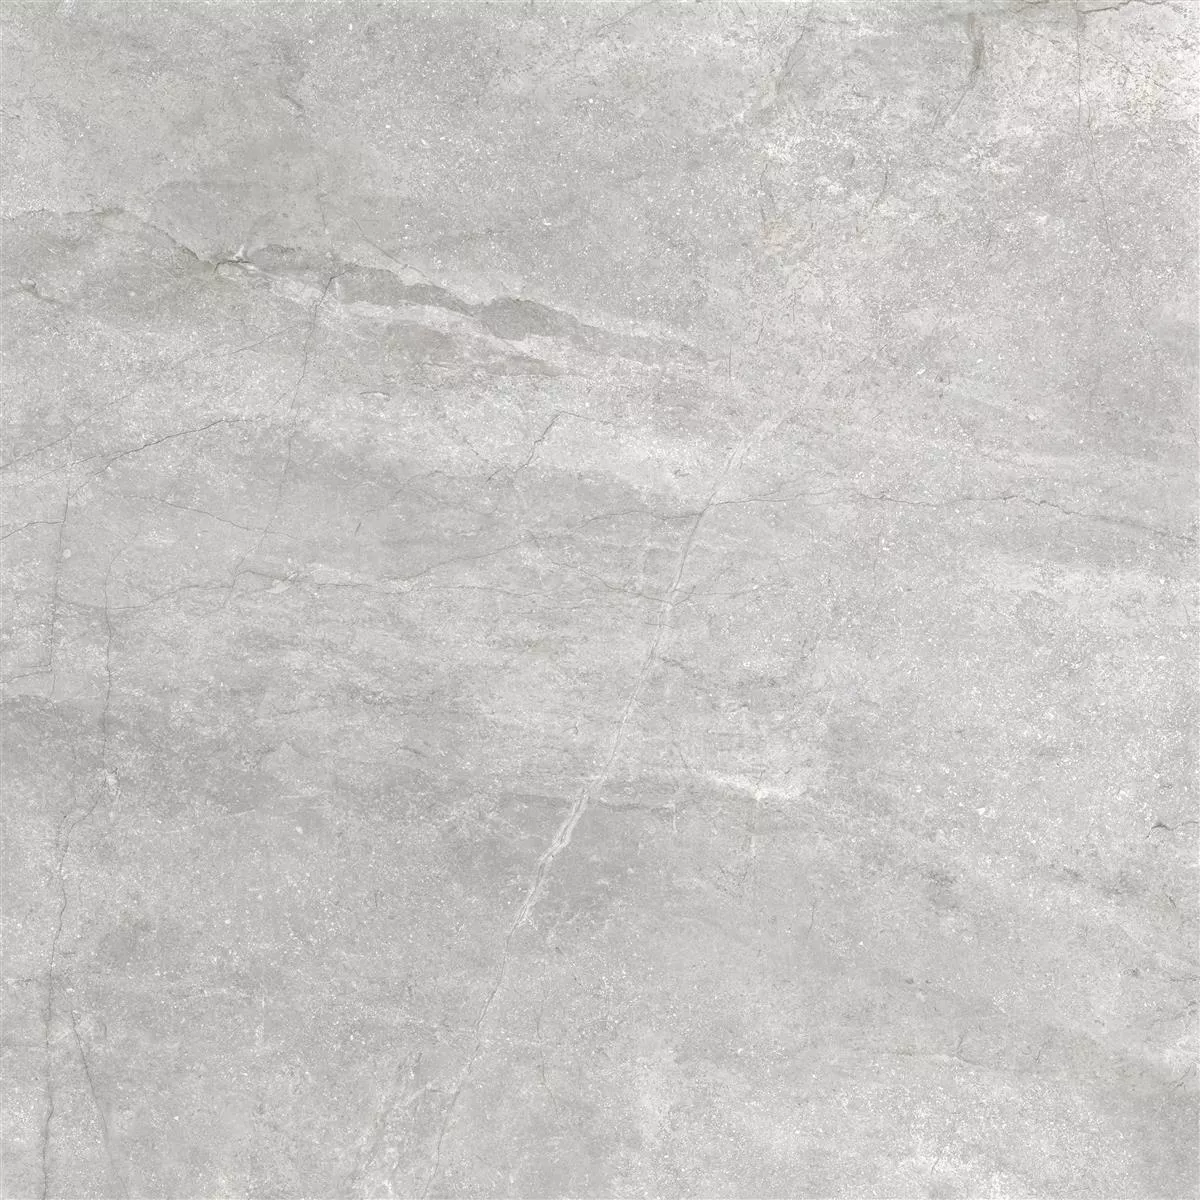 Podlahové Dlaždice Pangea Mramorový Vzhled Matný Stříbrná 60x60cm